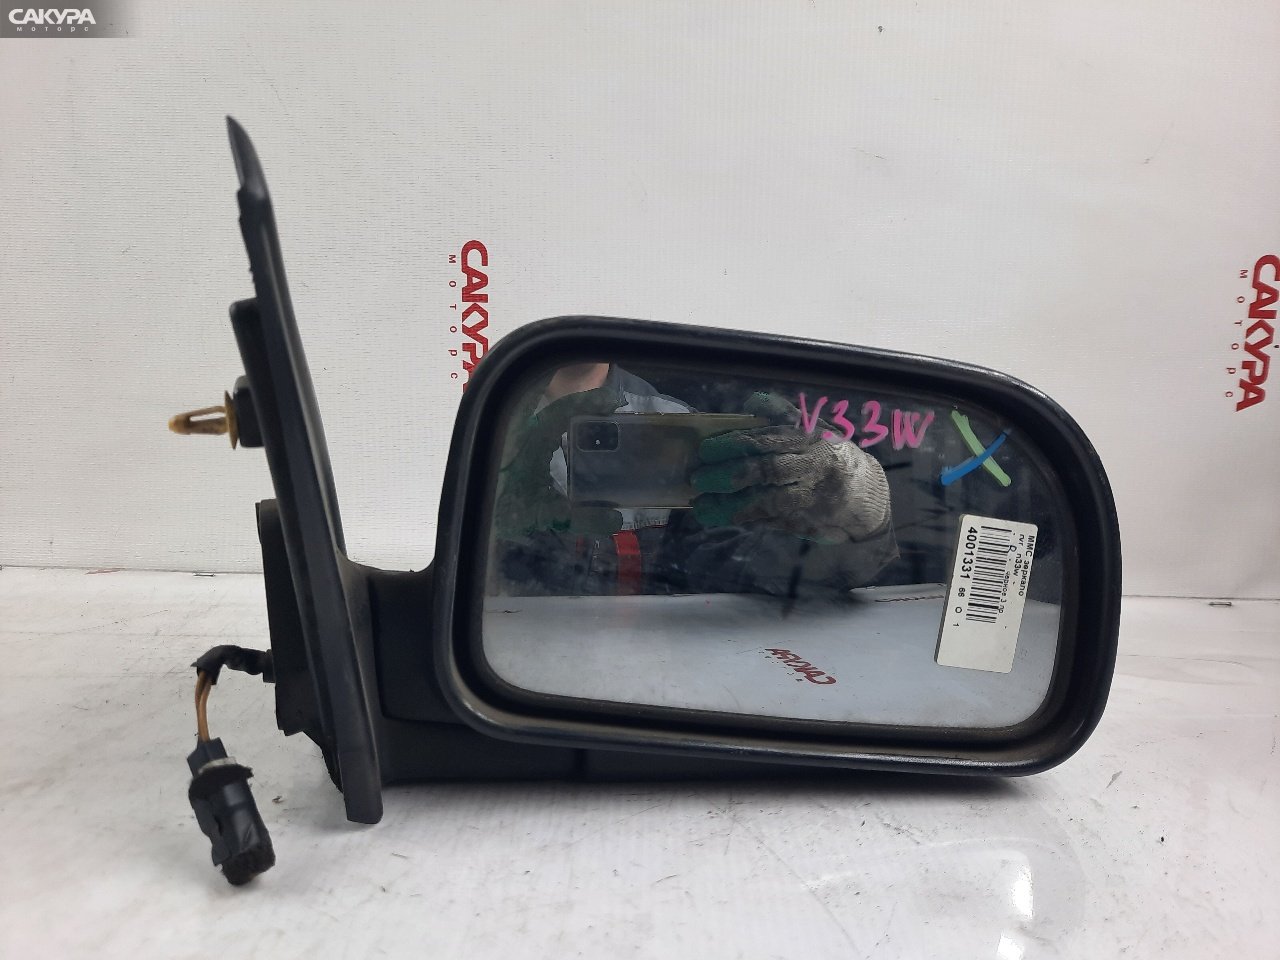 Зеркало боковое правое Mitsubishi Chariot N33W: купить в Сакура Красноярск.